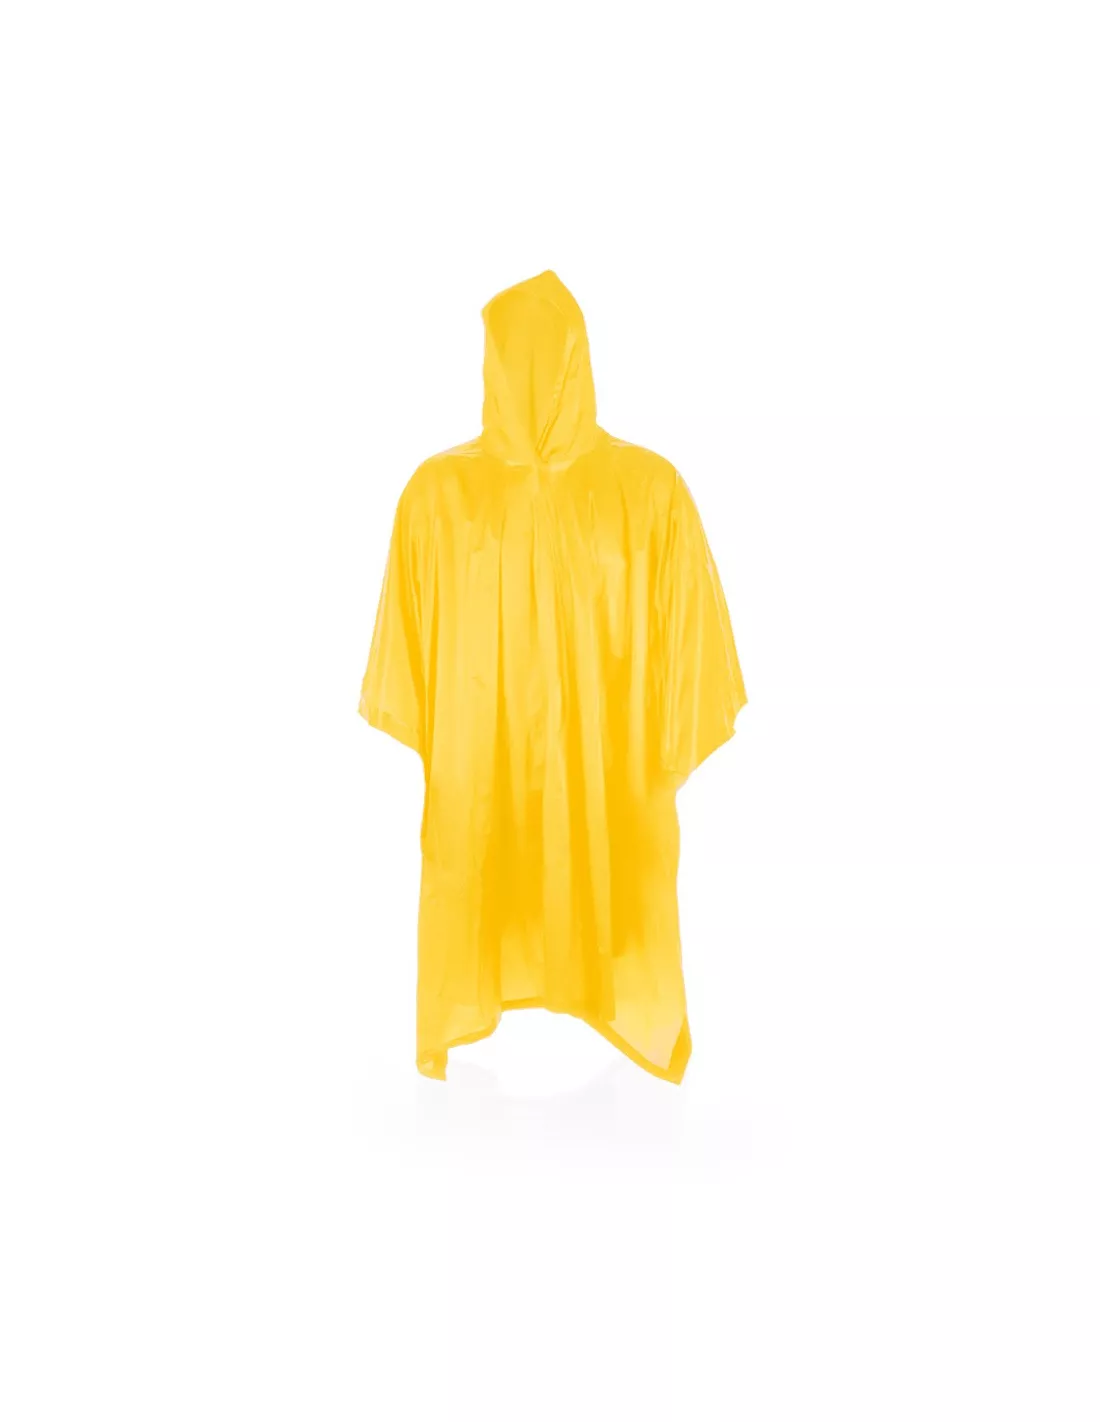 Chubasquero para mujer y hombre, traje de lluvia impermeable, poncho de  lluvia, productos para el hogar (color negro, tamaño: talla única)